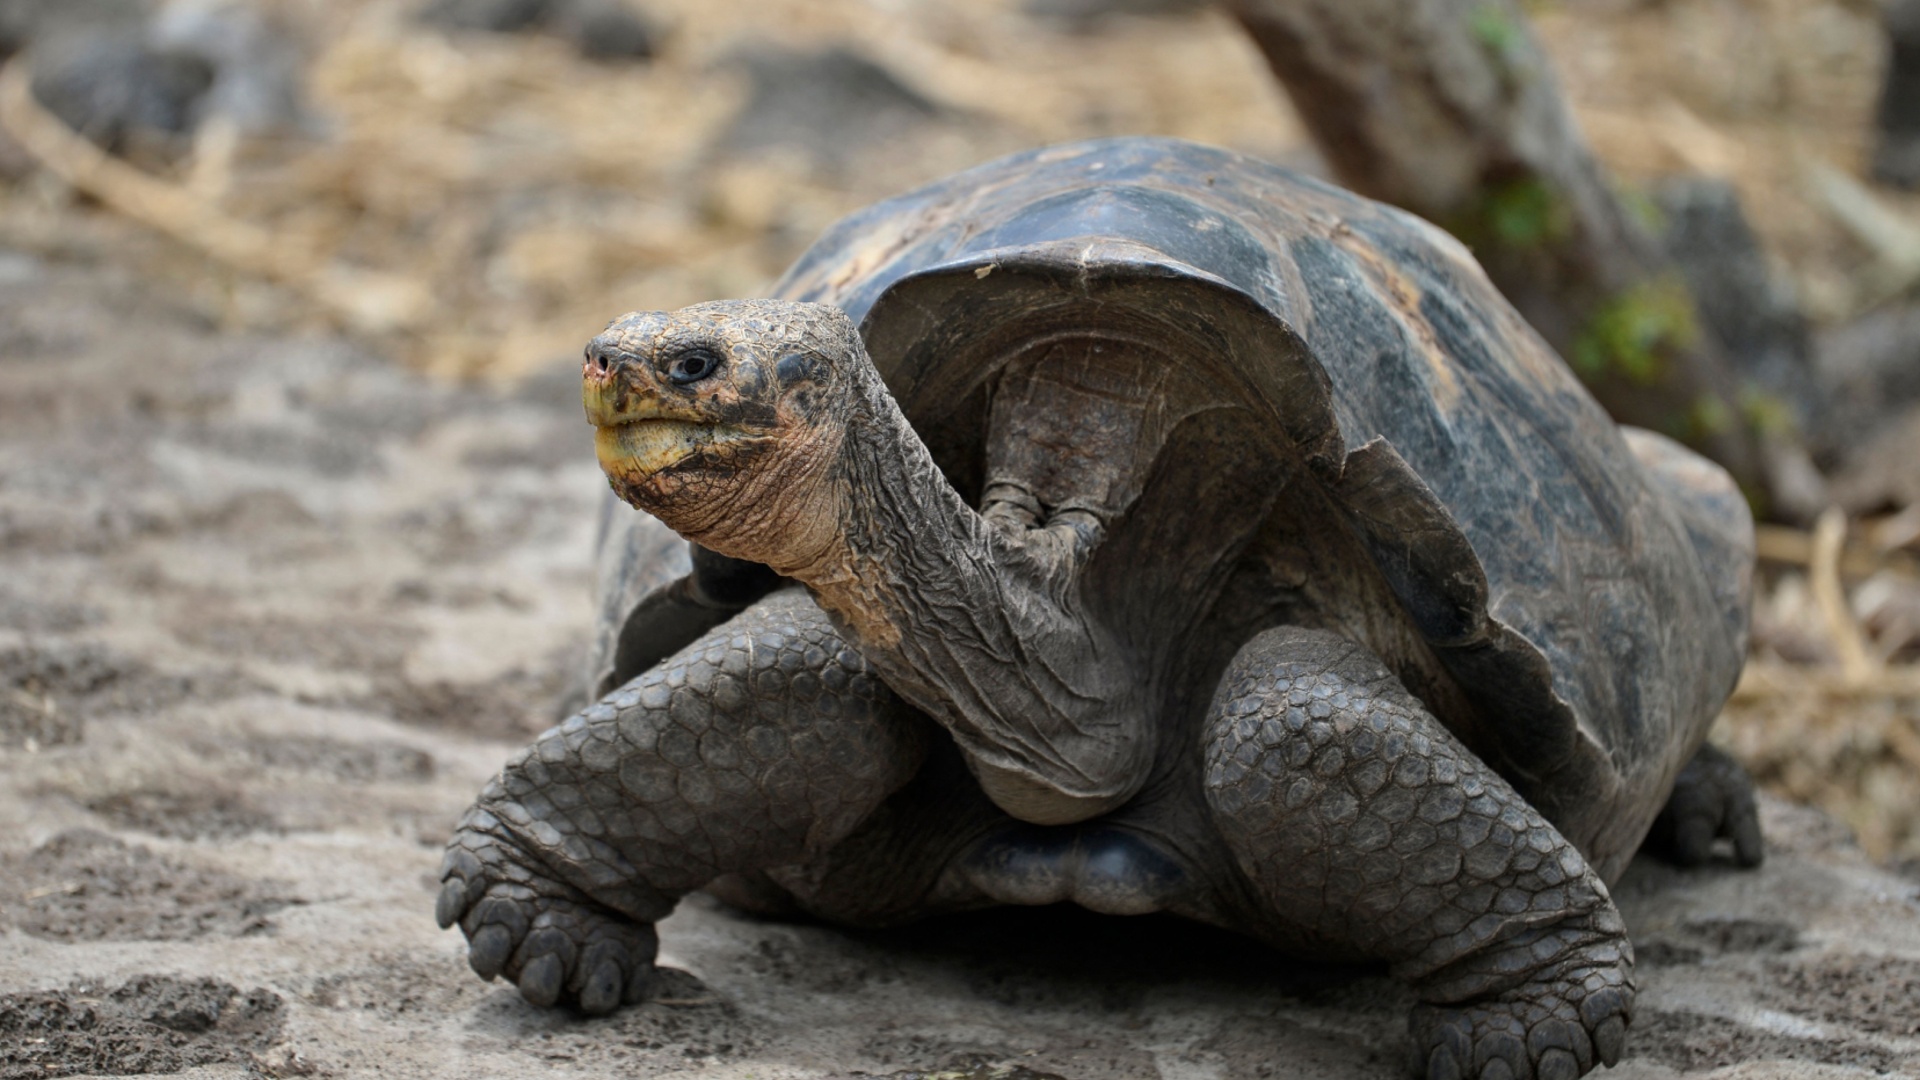 40 редких черепах вырастили и выпустили в дикую природу на Галапагосах